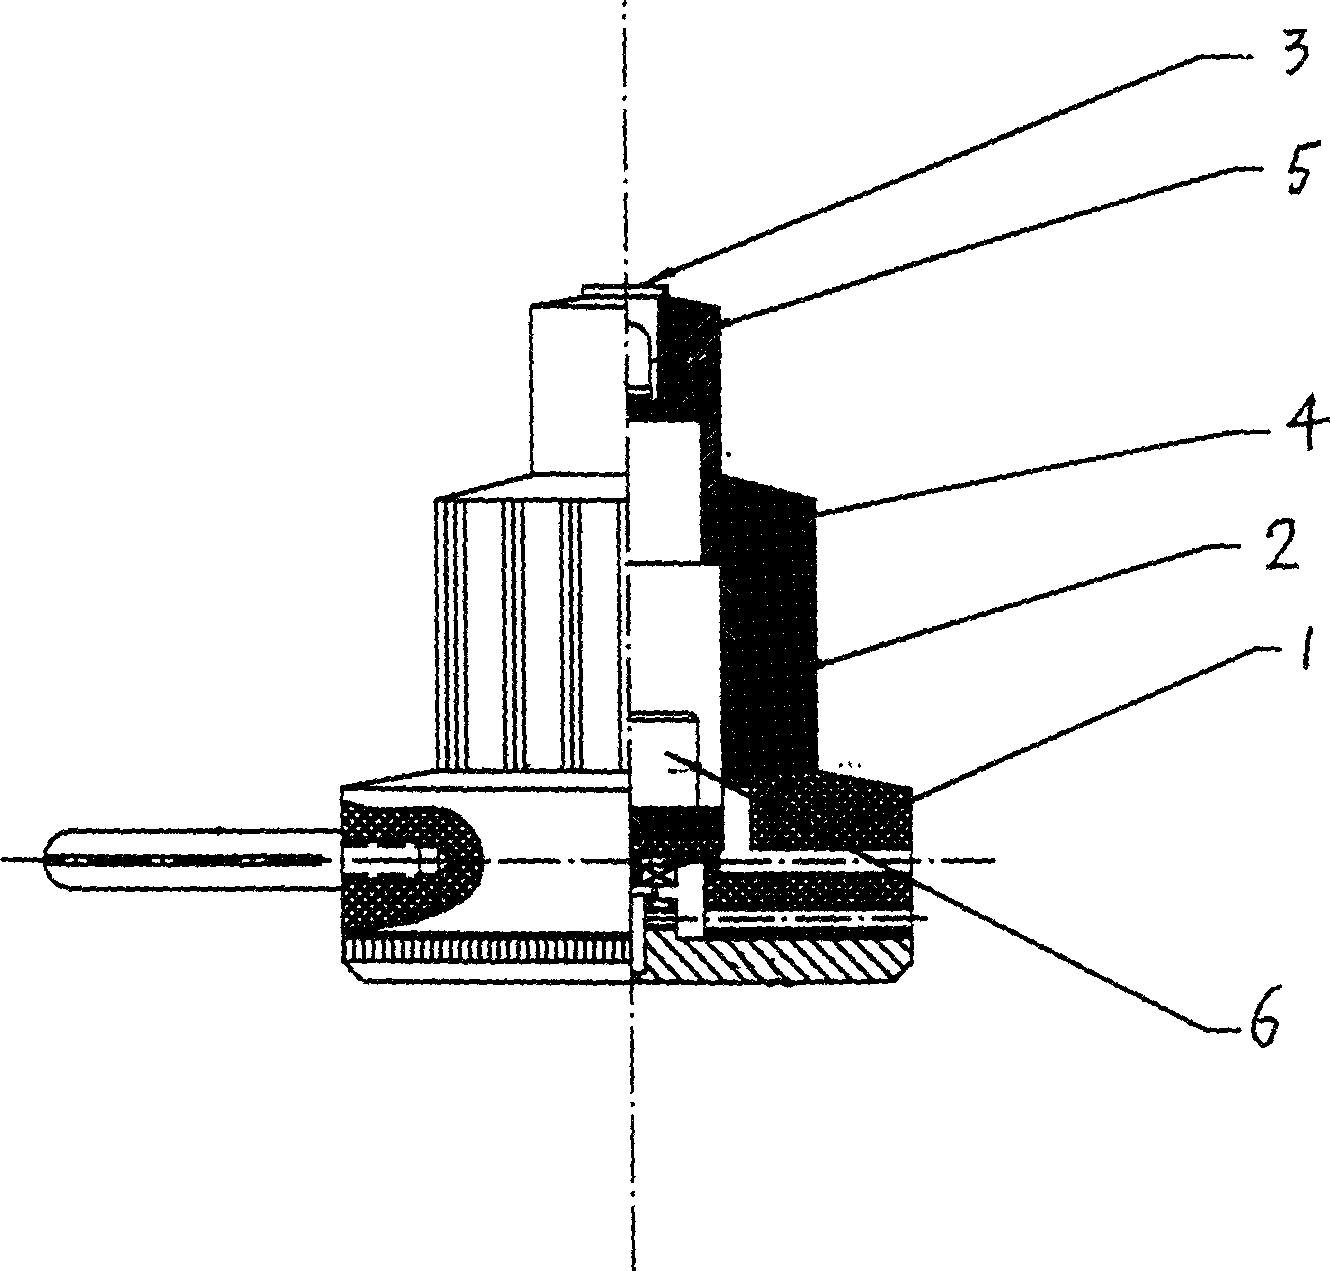 Method for lightening objective lens of microscope